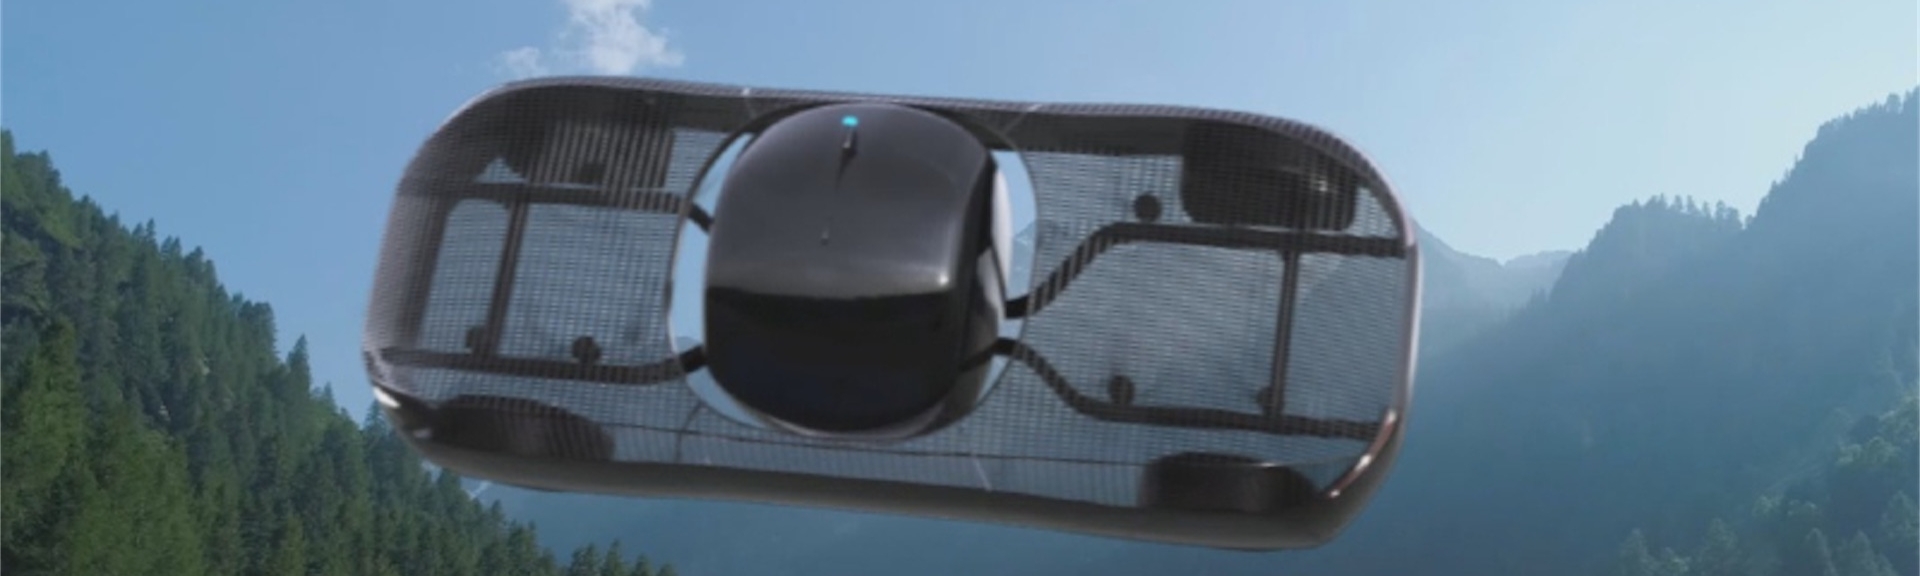 model-a-flying-alef-aeronautics-christan-kromme-speaker-futurist